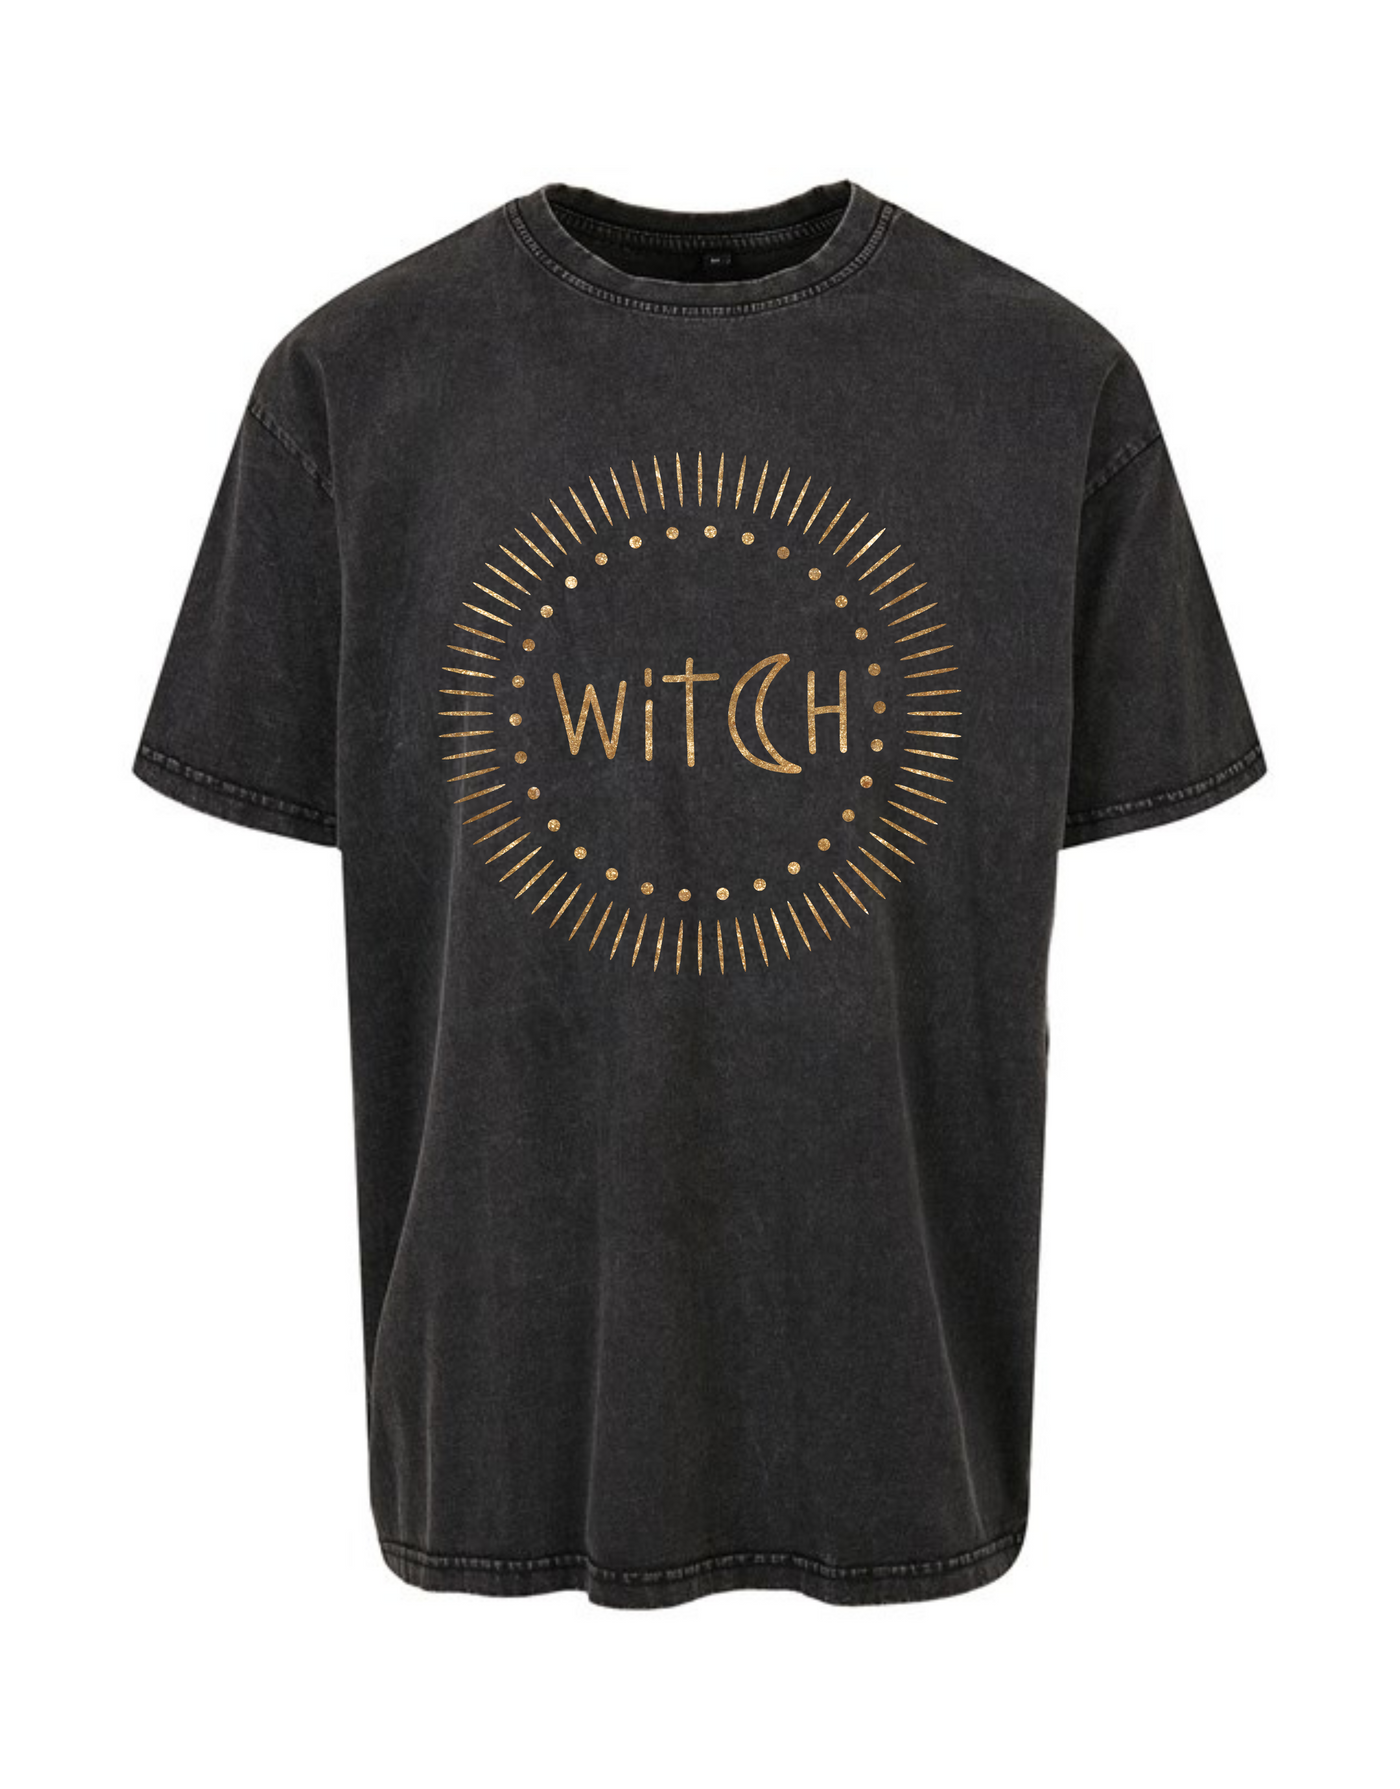 Black "Witch" Unisex Acid Wash T-Shirt